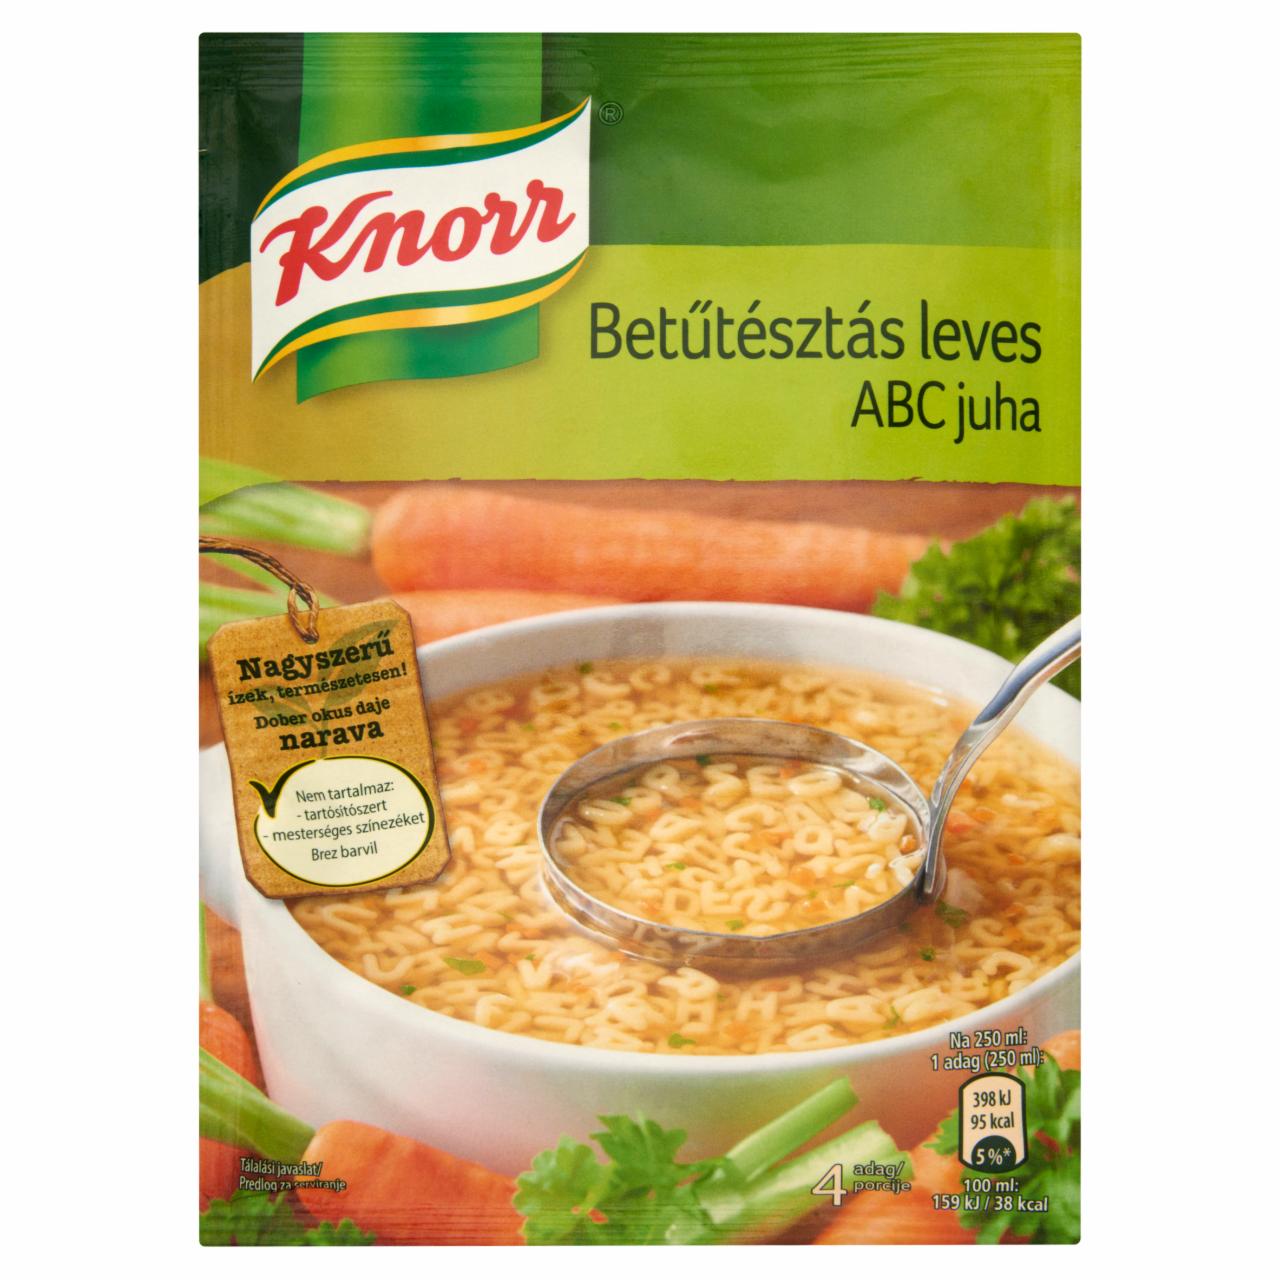 Képek - Knorr betűtészta leves 109 g